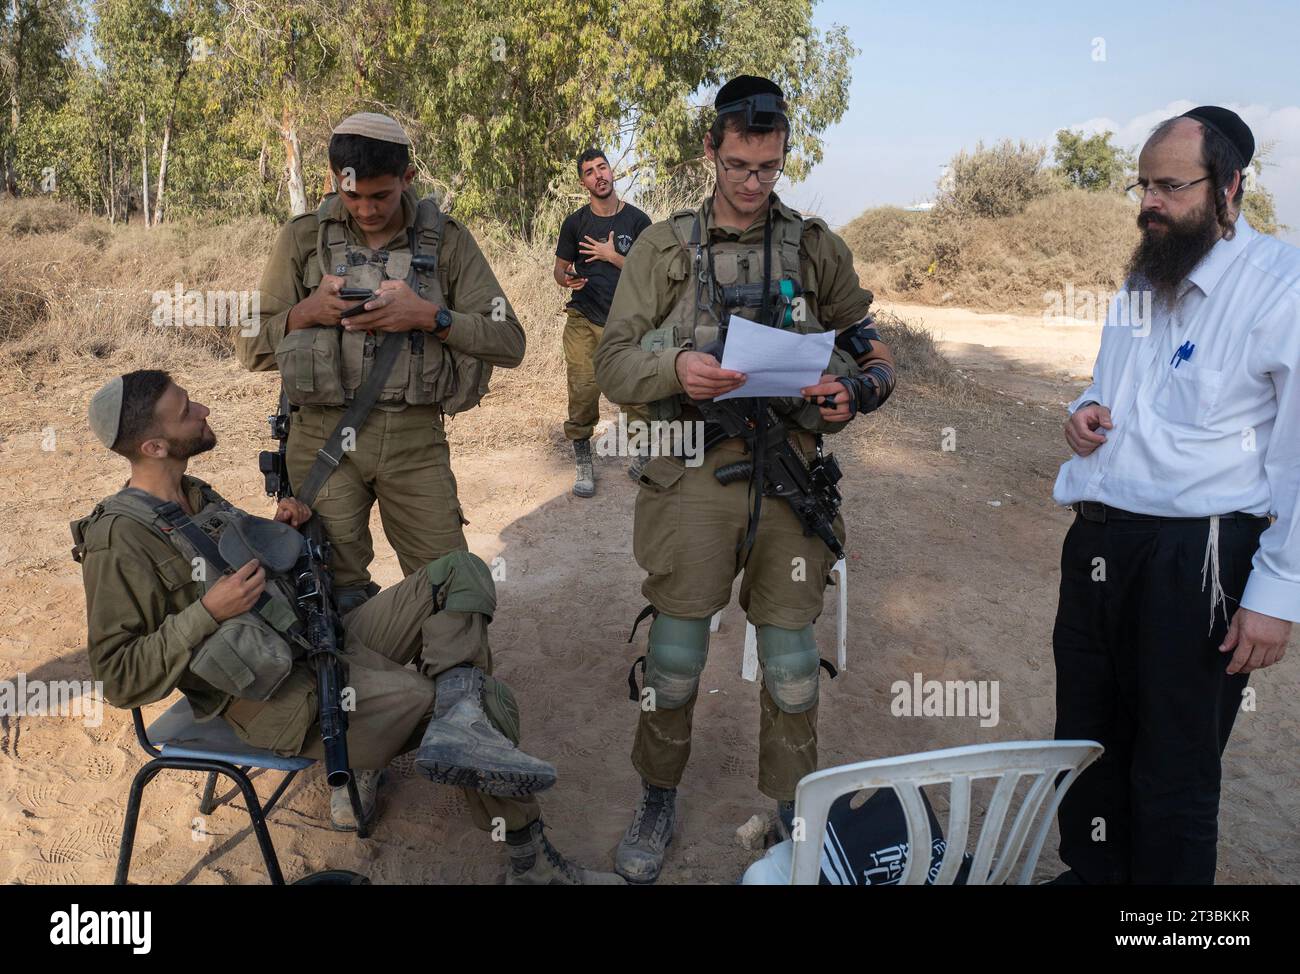 Israele meridionale, Israele. 24 ottobre 2028. I soldati israeliani si rilassano come se fossero stati equipaggiati da un rabbino per pregare in un'area di sosta nel sud di Israele vicino al confine con la Striscia di Gaza martedì 24 ottobre 2023. Israele si sta preparando ad entrare nella Striscia di Gaza dopo le infiltrazioni e gli attacchi che hanno massacrato circa 1,4000 israeliani. Più di 200 sono stati presi in ostaggio nella Striscia di Gaza. Foto di Jim Hollander/UPI Credit: UPI/Alamy Live News Foto Stock